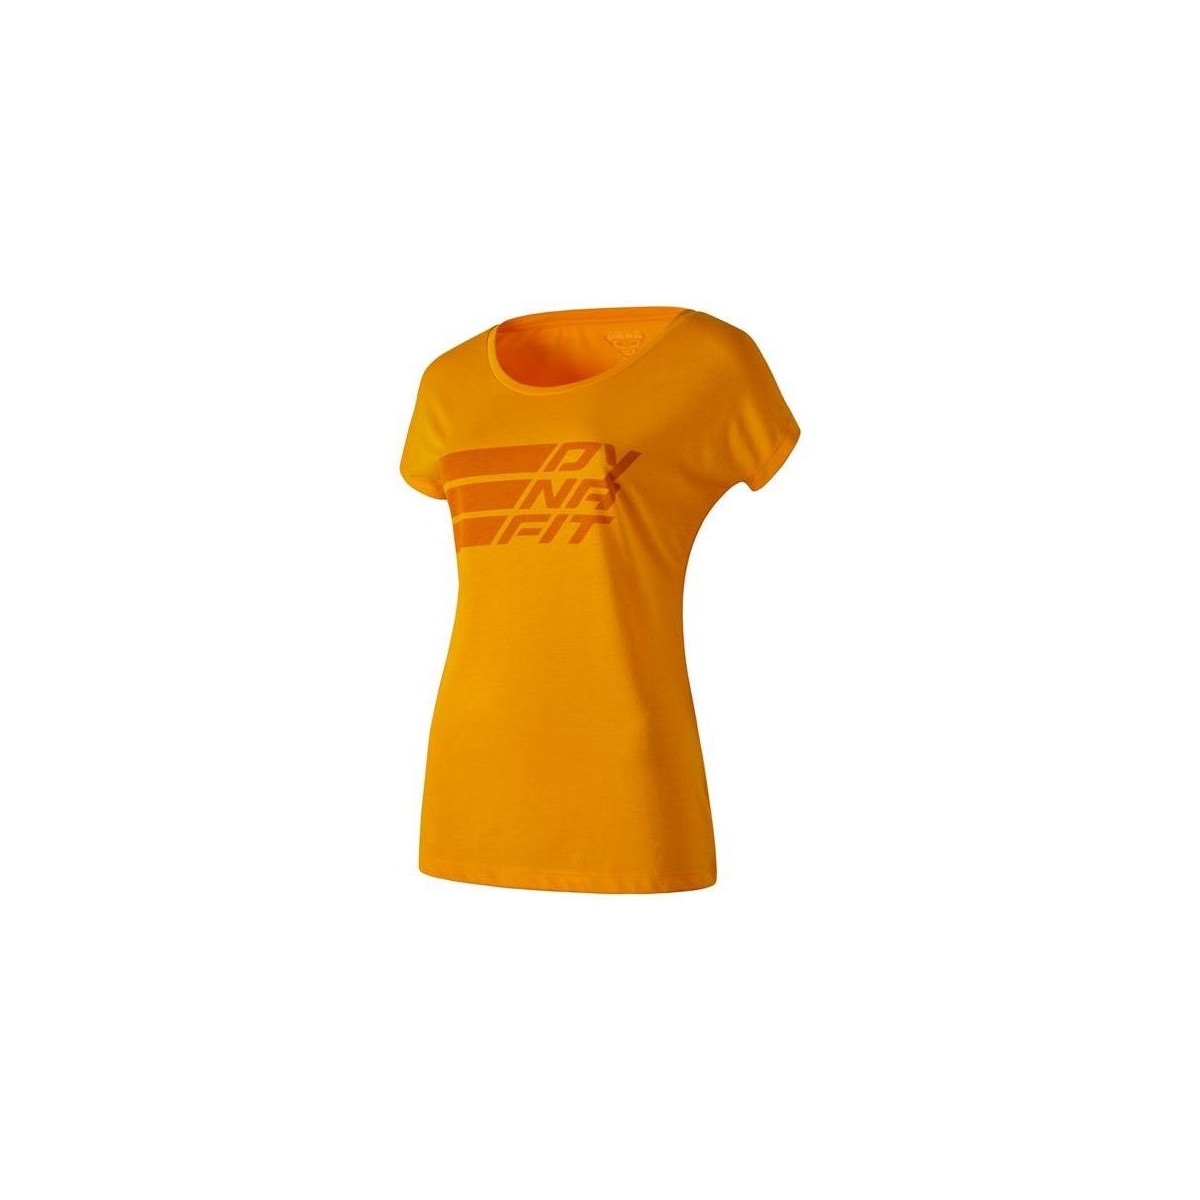 Textil Ženy Trička s krátkým rukávem Dynafit Compound Dri-Rel Co W S/s Tee 70685-4630 Oranžová